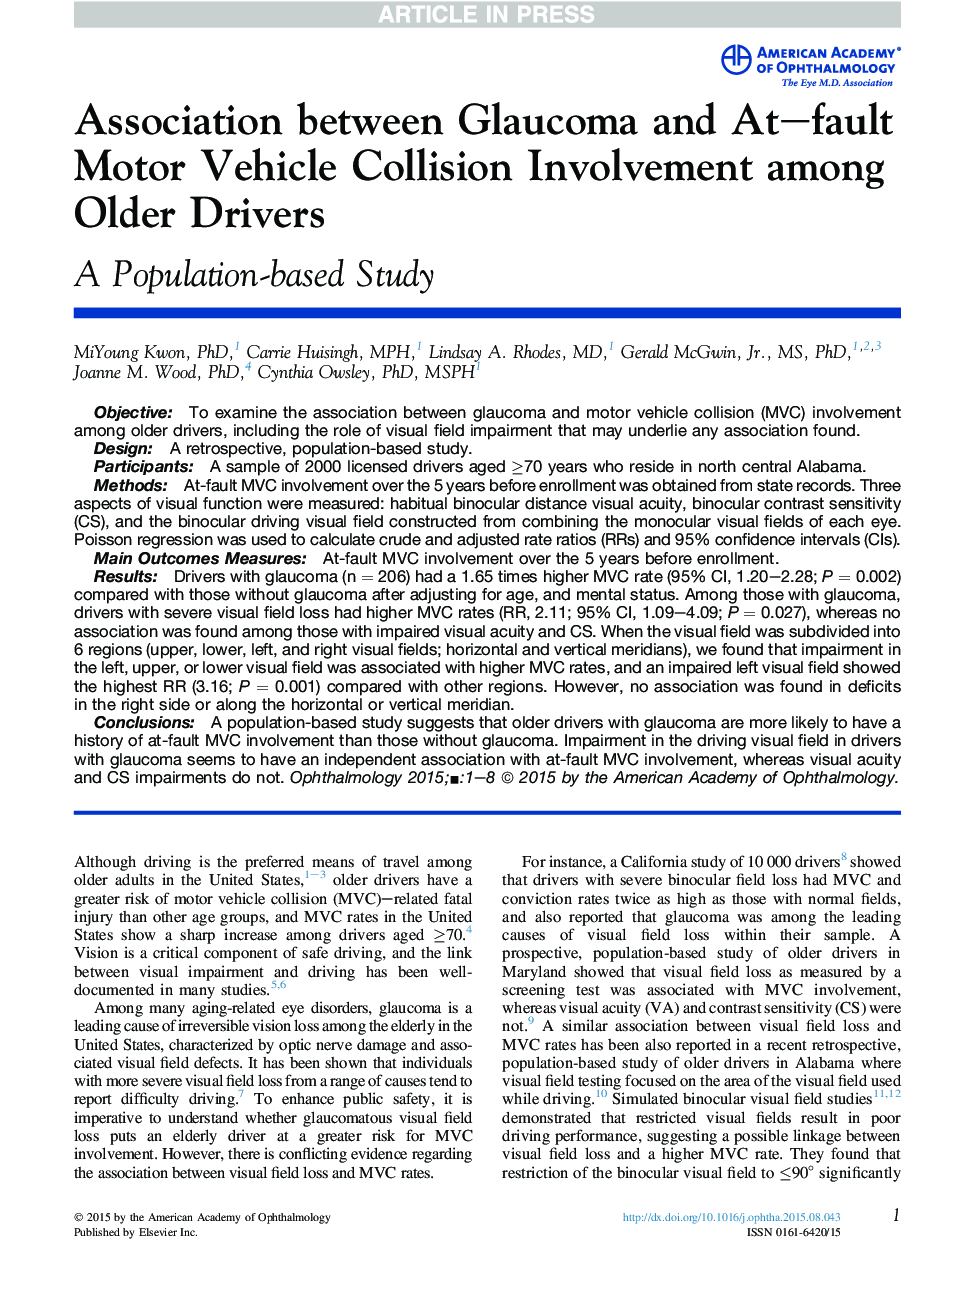 ارتباط بین گلوکوم و برخورد موتورهای ناشی از نقص موتور در میان رانندگان قدیمی تر 